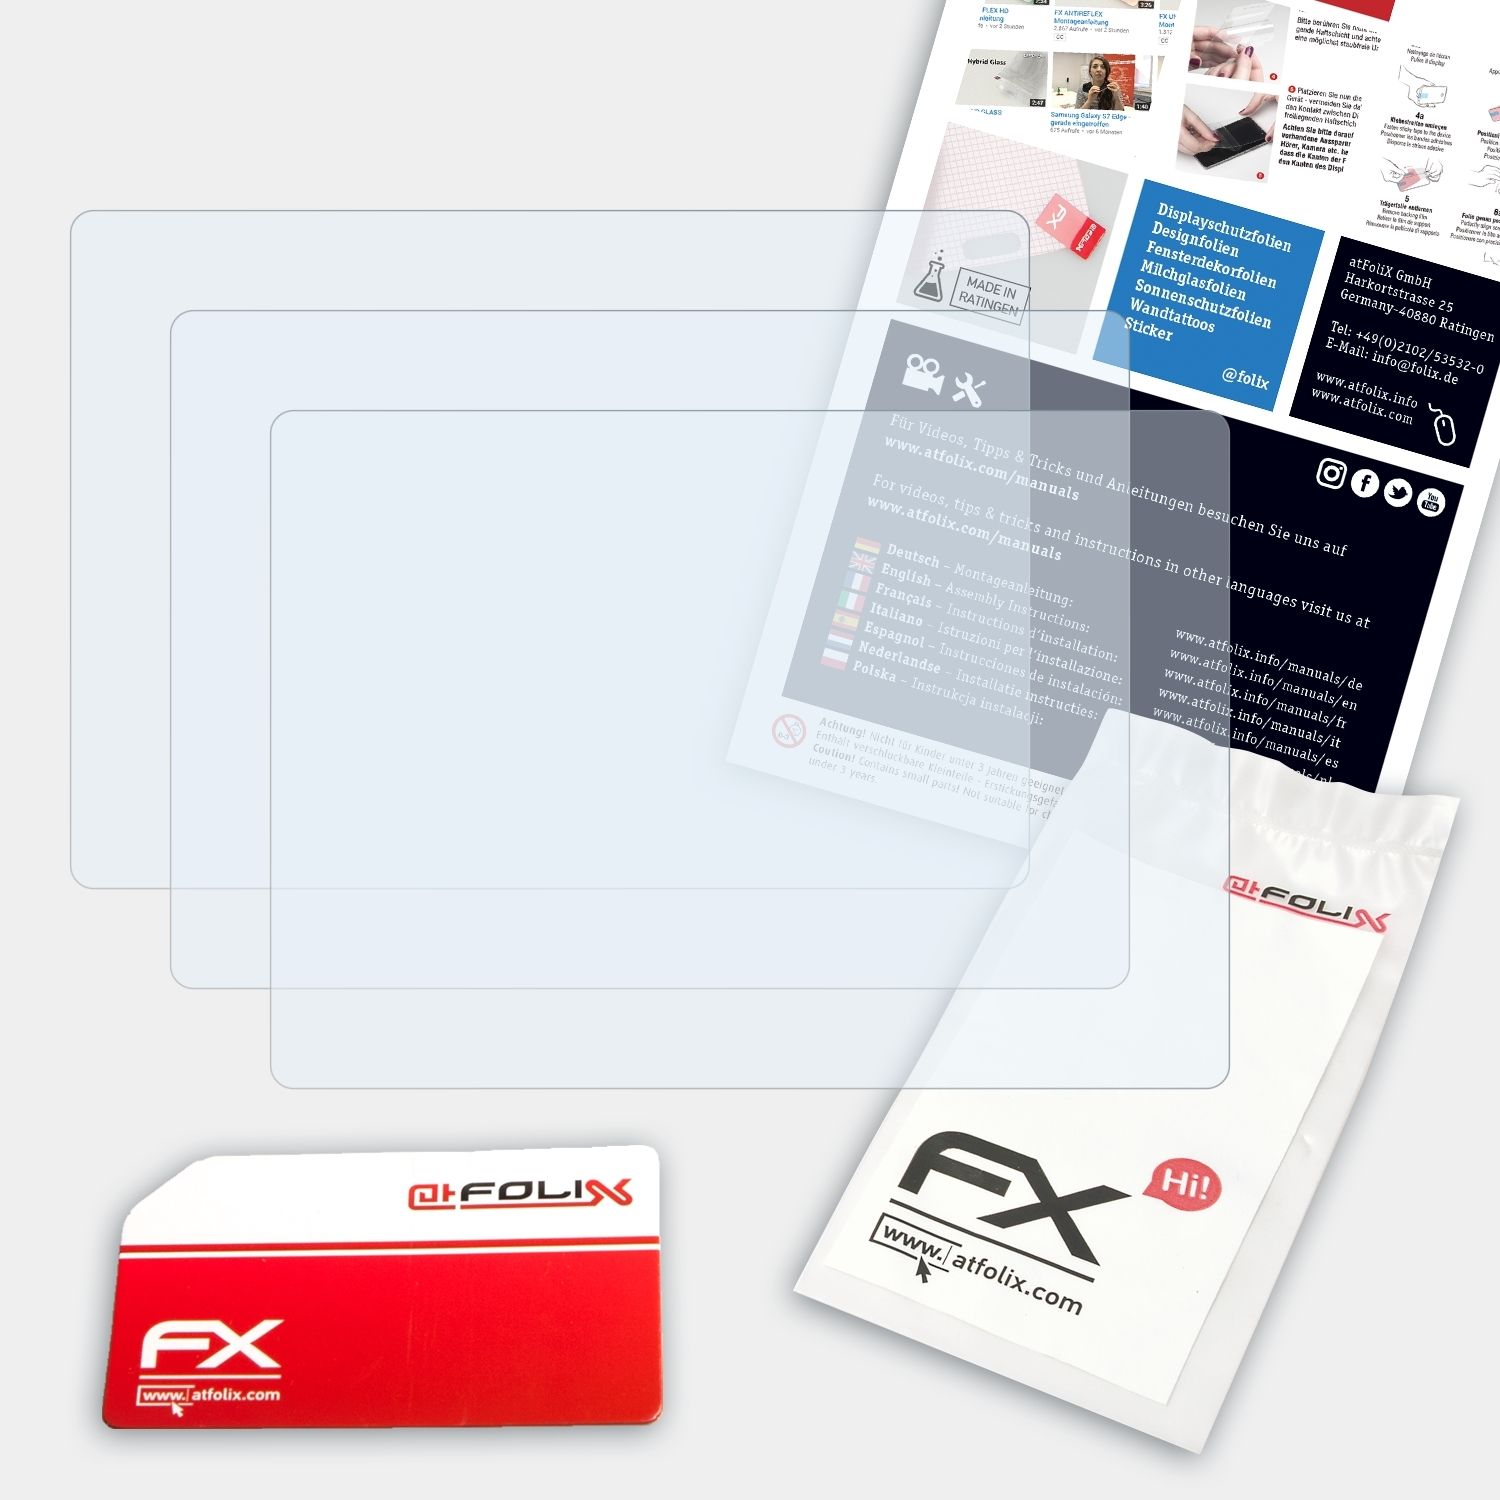 ATFOLIX 3x FX-Clear Displayschutz(für Panasonic DMC-TZ40) Lumix